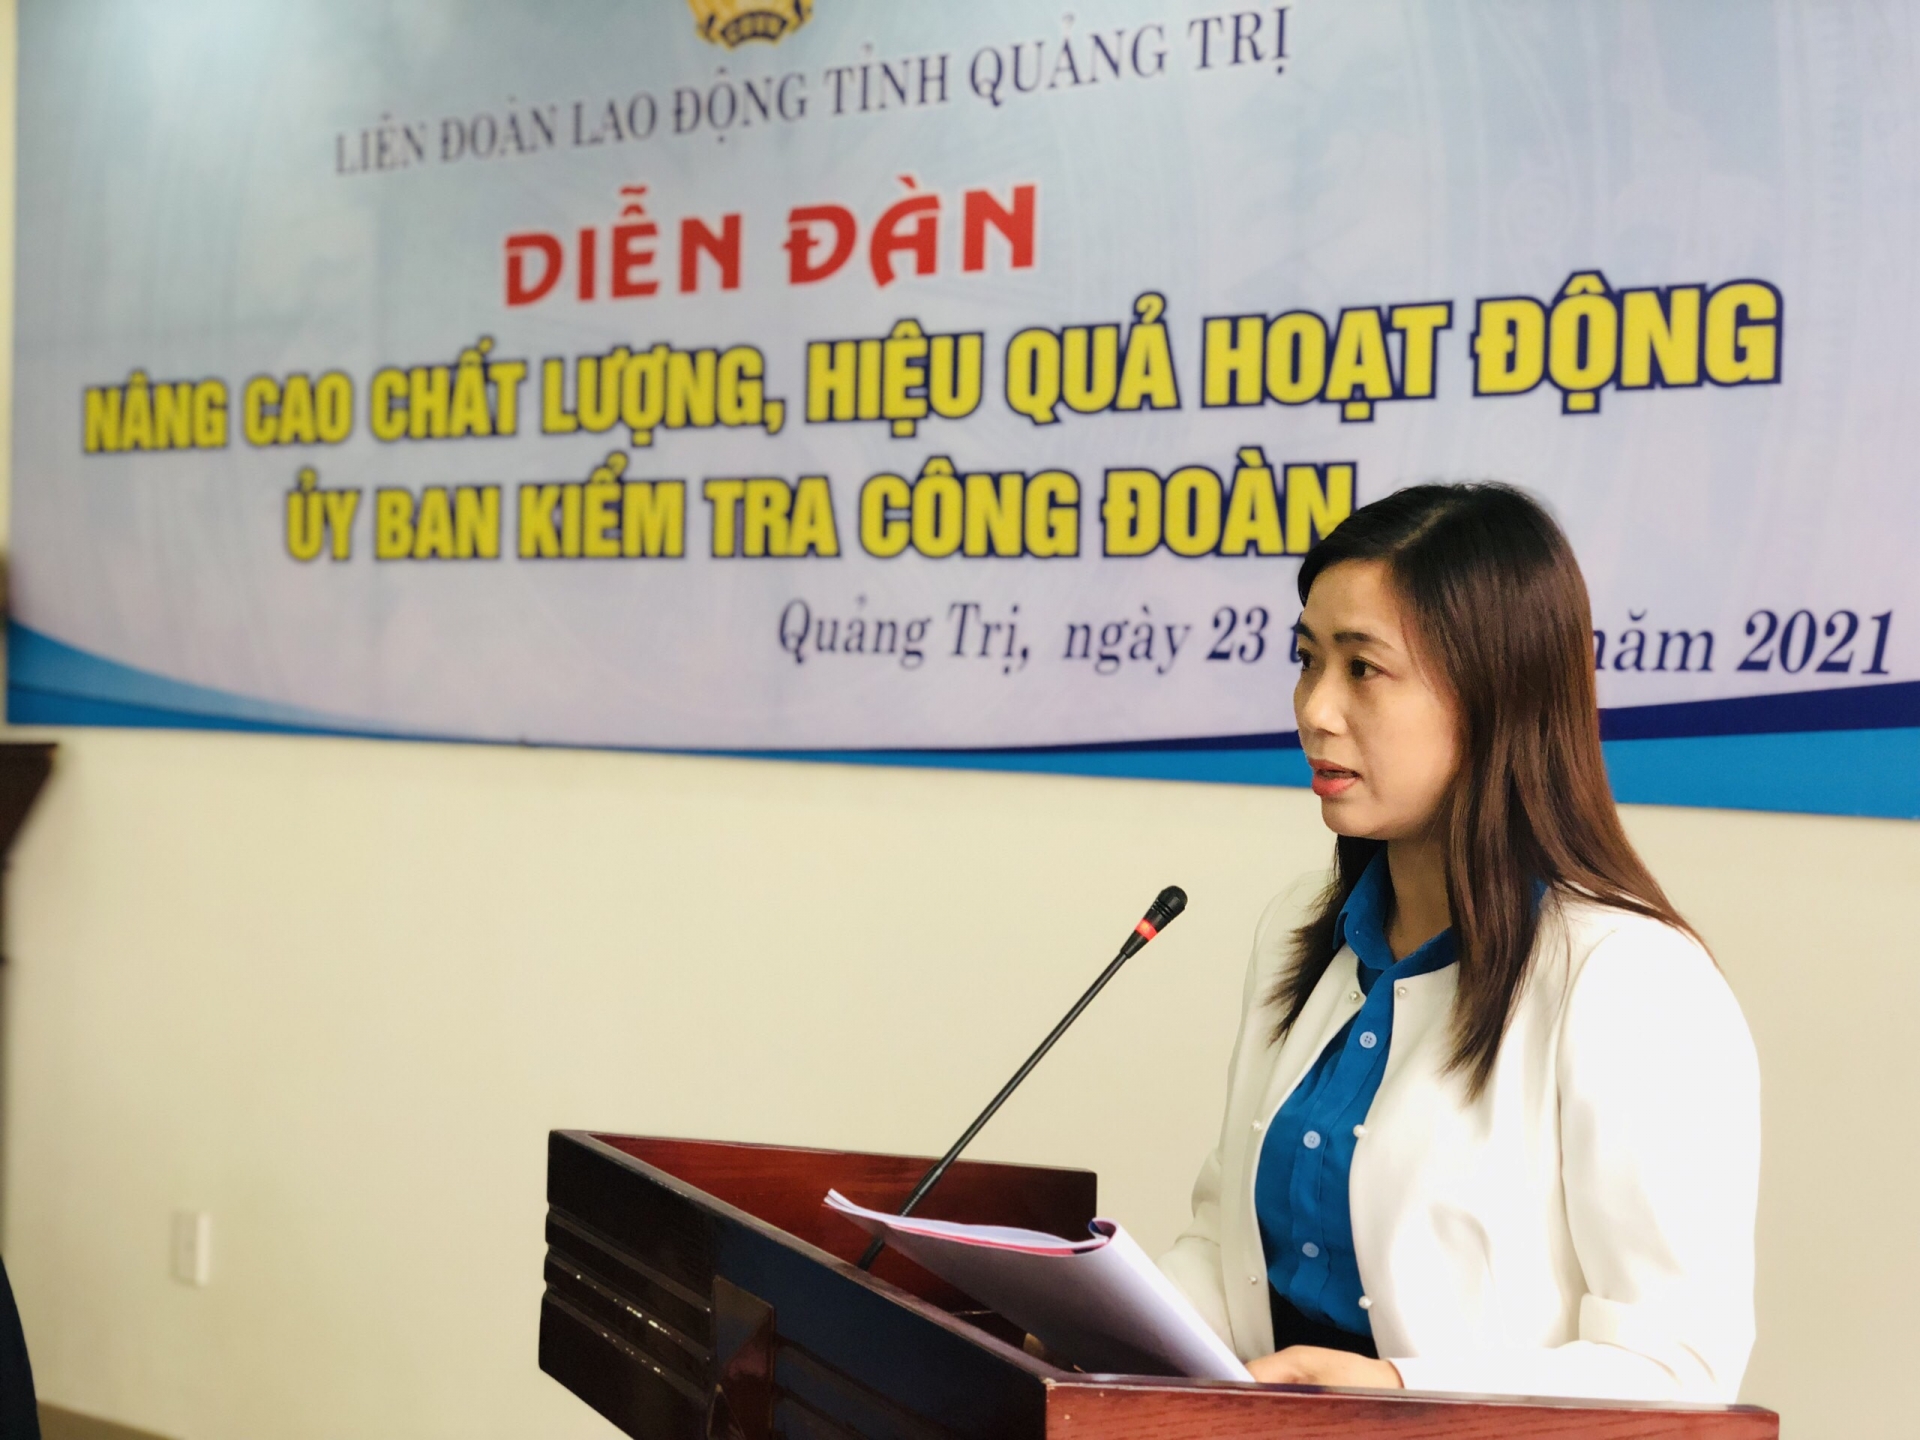 LĐLĐ tỉnh Quảng Trị tổ chức Diễn đàn “Nâng cao chất lượng, hiệu quả hoạt động UBKT"